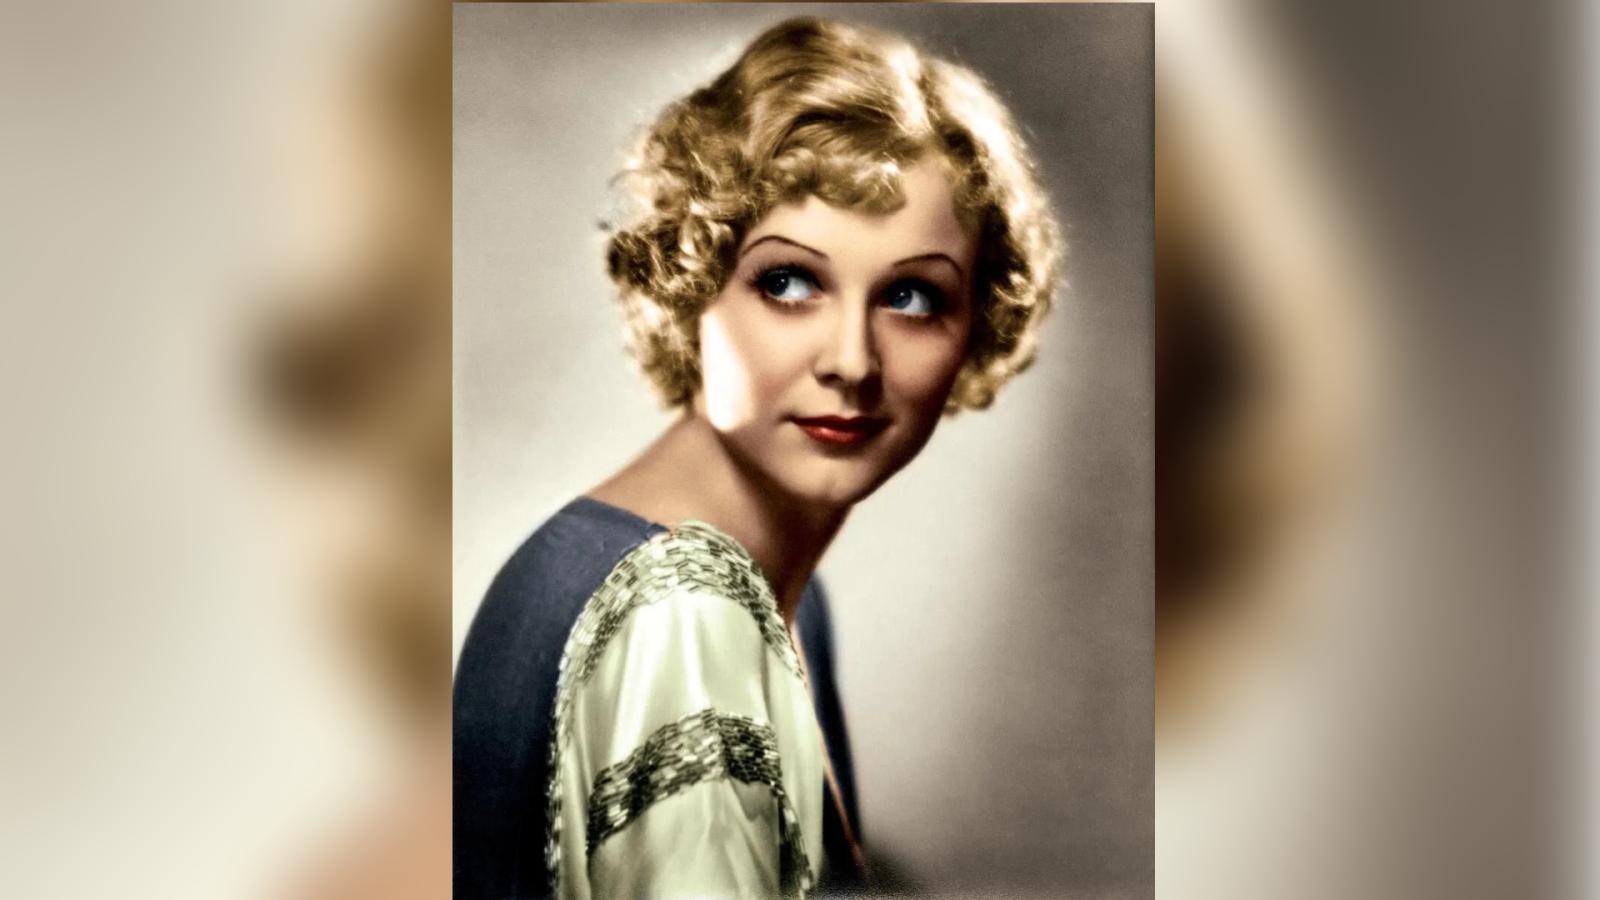 Она стала звездой лишь в 87 лет: старушка Роуз из «Титаника» поразила своей красотой в молодости - image 1